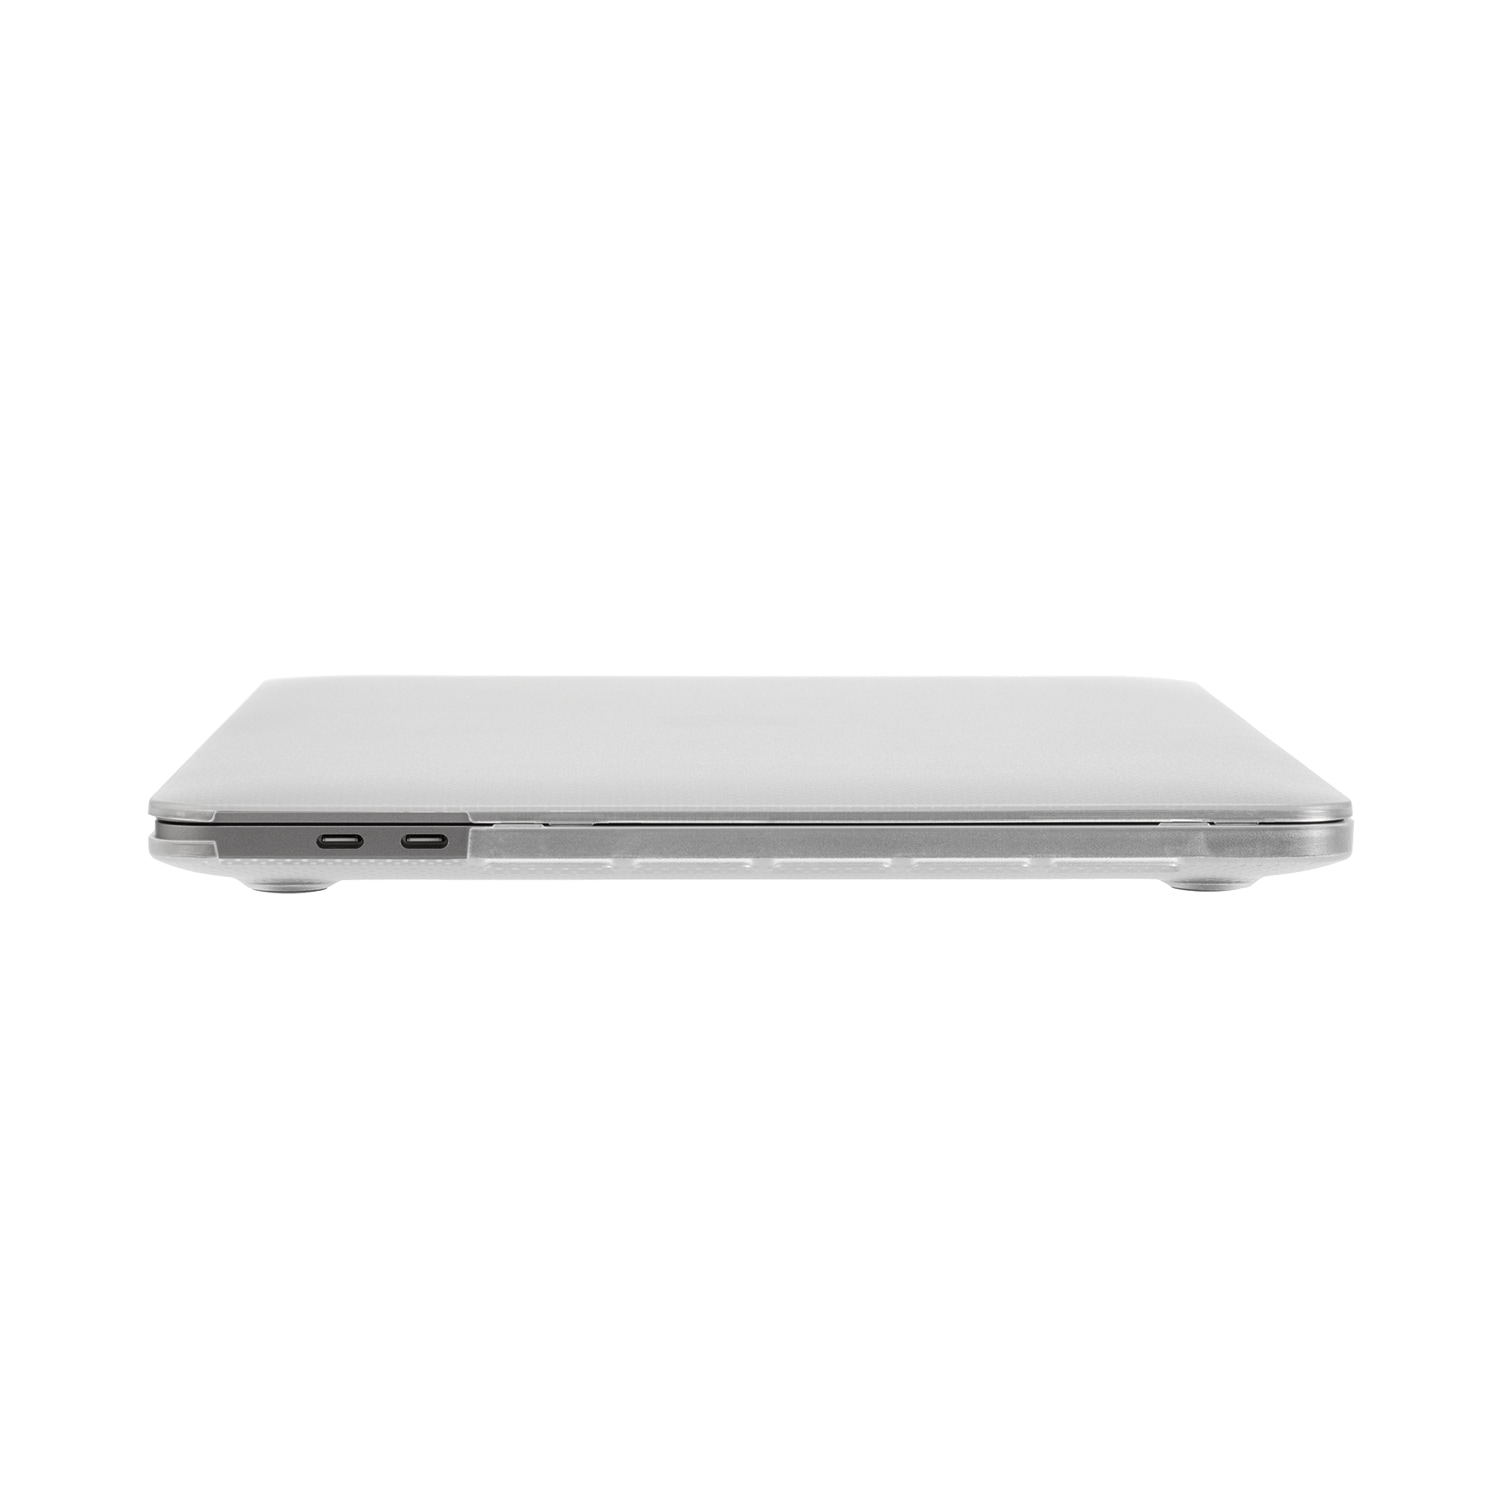 INCASE Laptoptasche »Hardshell Dots Case für MacBook Pro«